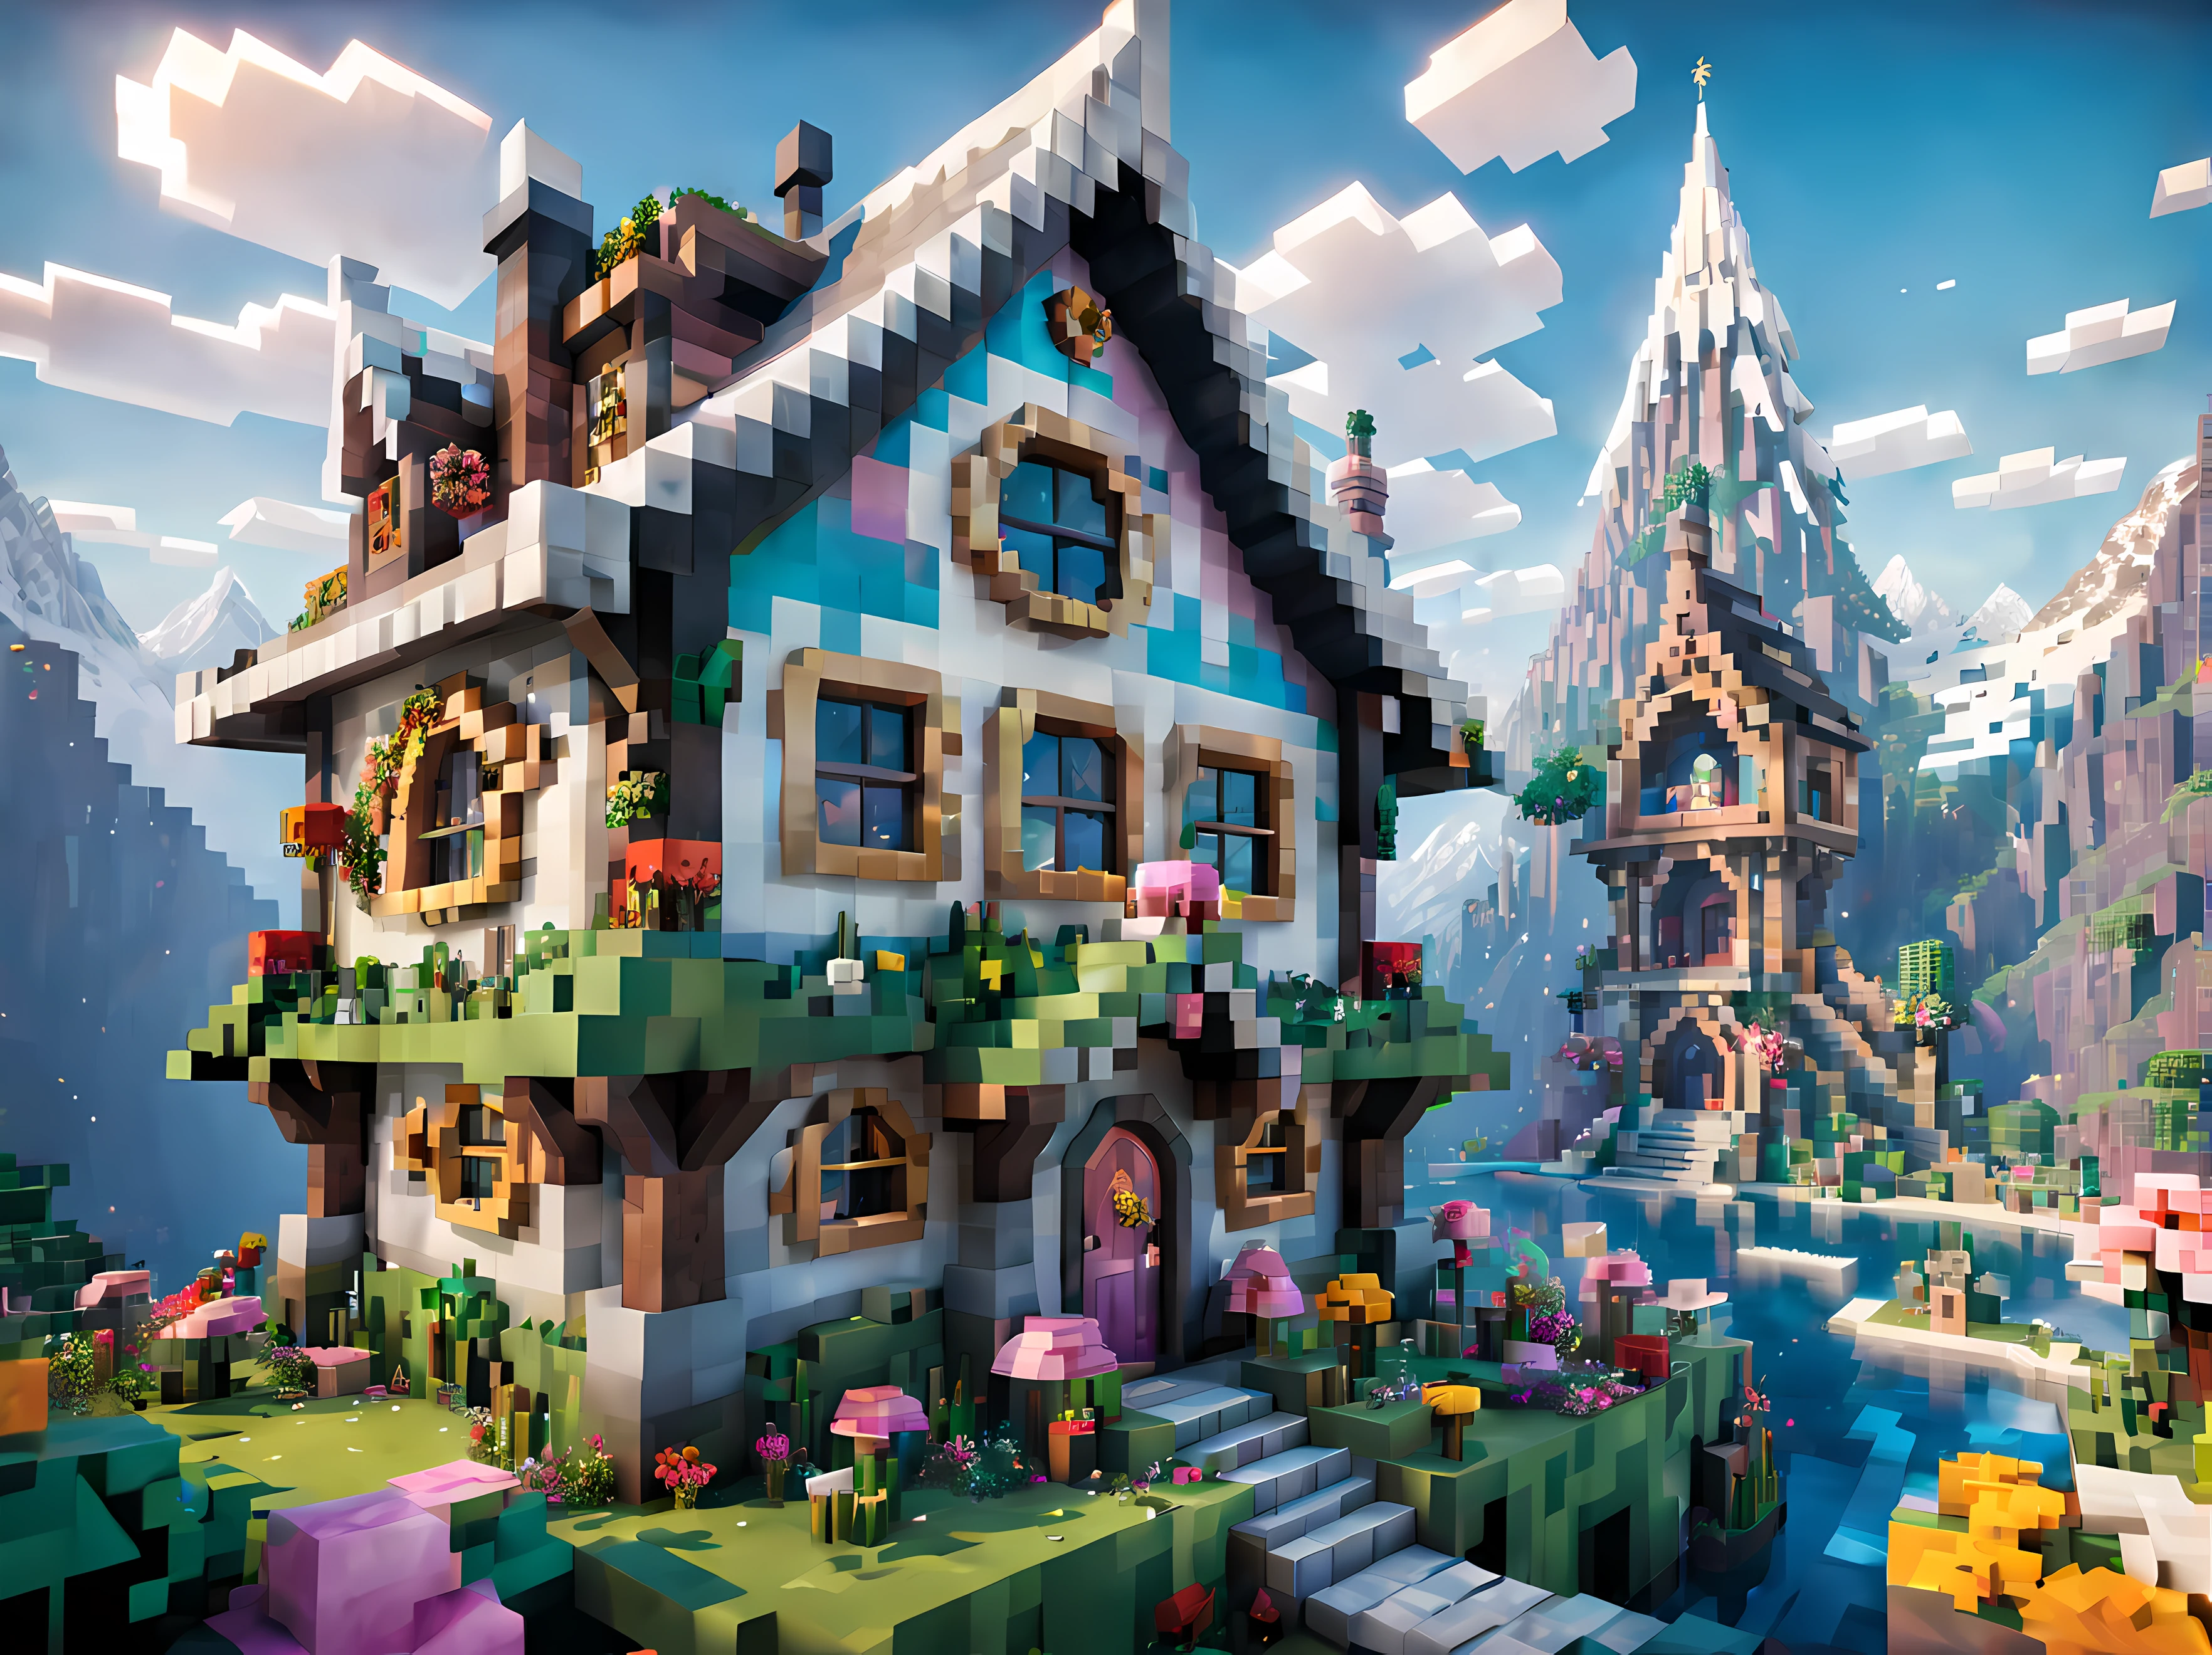 Estilo Minecraft (Ultrarealistic:1.3), (vista lateral:1.5) de um (Cabine de fadas alta grande) com janelas redondas, arte ambientalwork, arte ambiental, (decorações elegantes), (Libra Mística), (lindo:1.4), (atraente:1.3), épico nevado (montanhas), natureza de verão, bloqueado, pixelizado, cores vibrantes, (ornamentado feminino:1.3), Flores, (céu brilhante do céu), Partículas etéreas